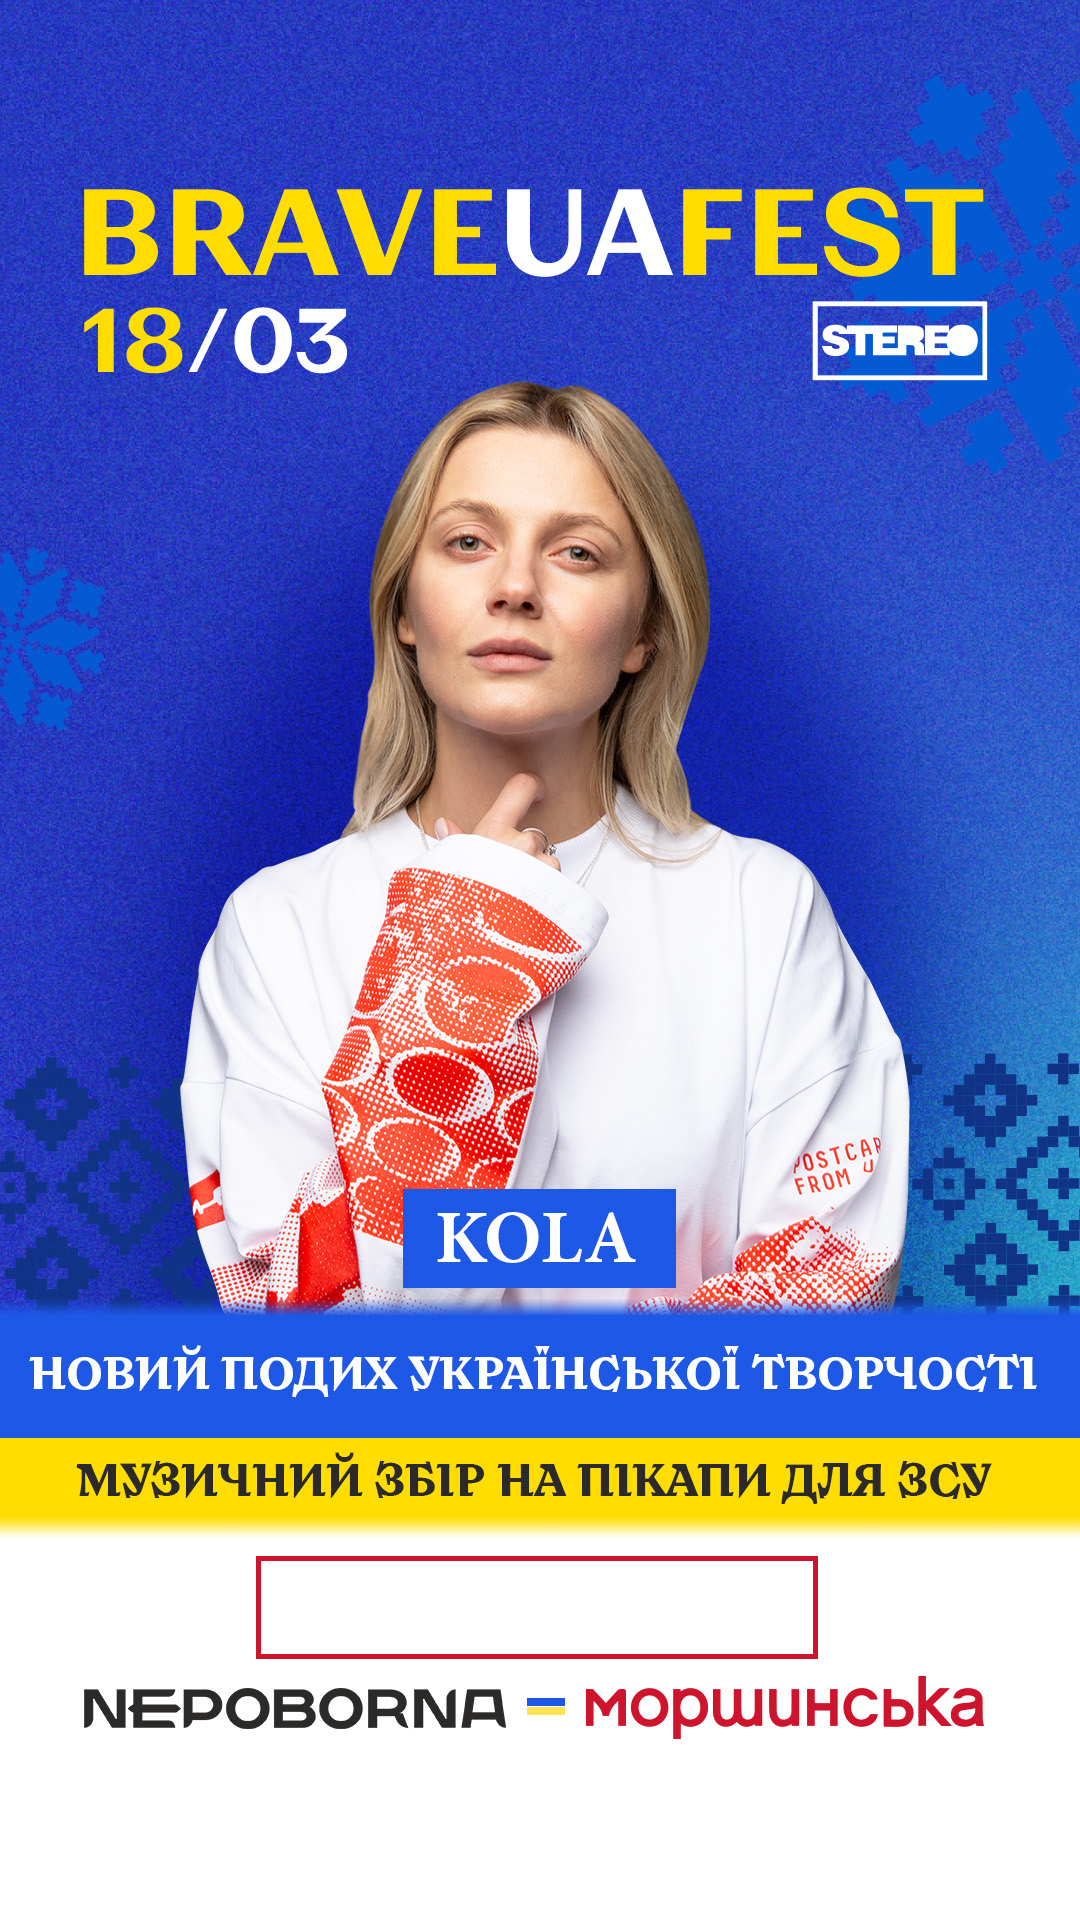 У Києві пройде благодійний фестиваль за участю популярних артистів